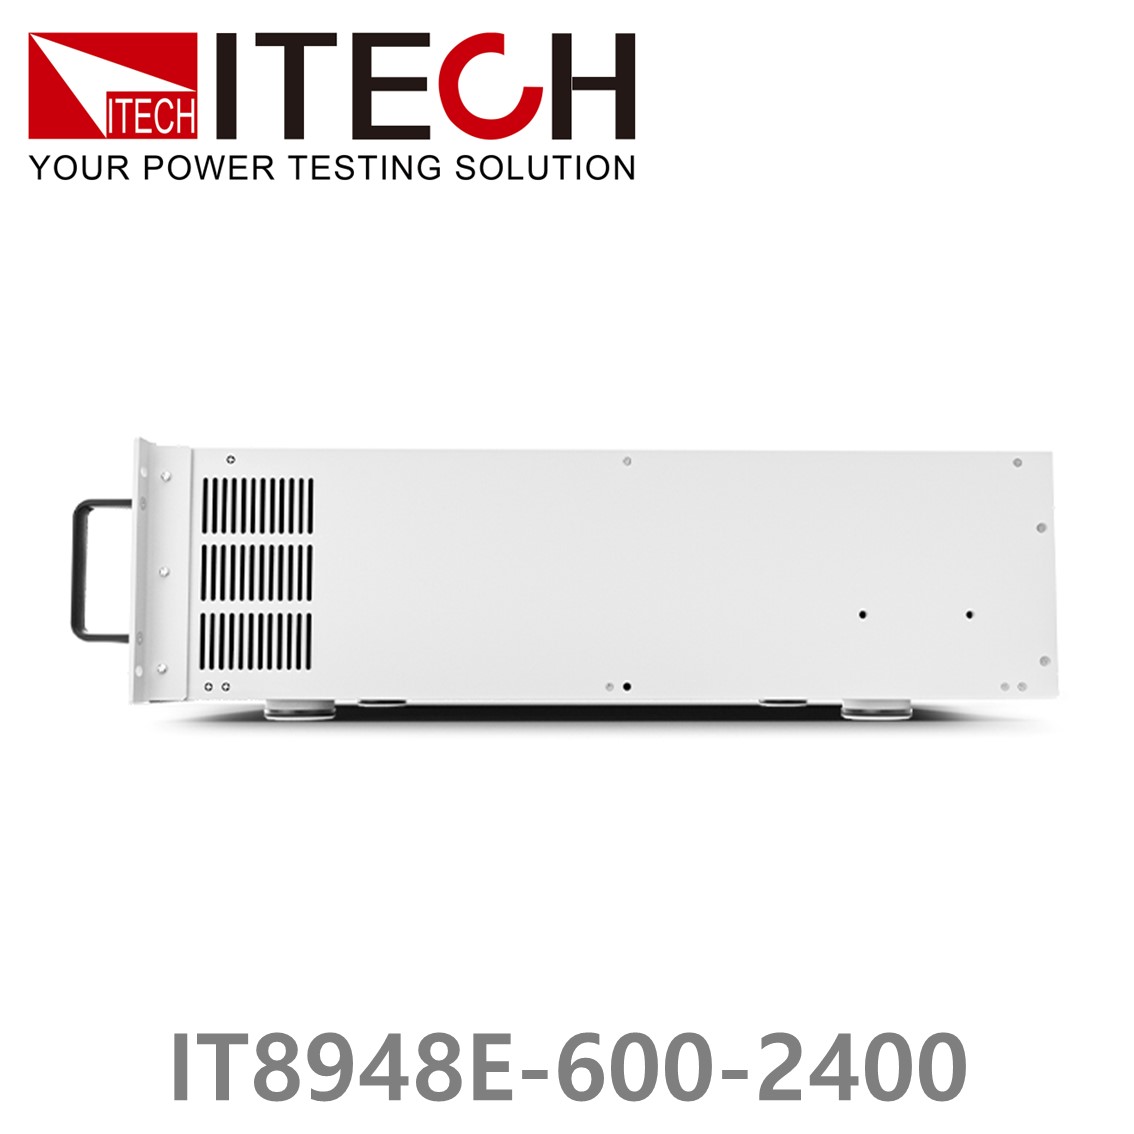 [ ITECH ] IT8948E-600-2400  고성능 고전력 DC 전자로드 600V/2400A/48kW (37U)